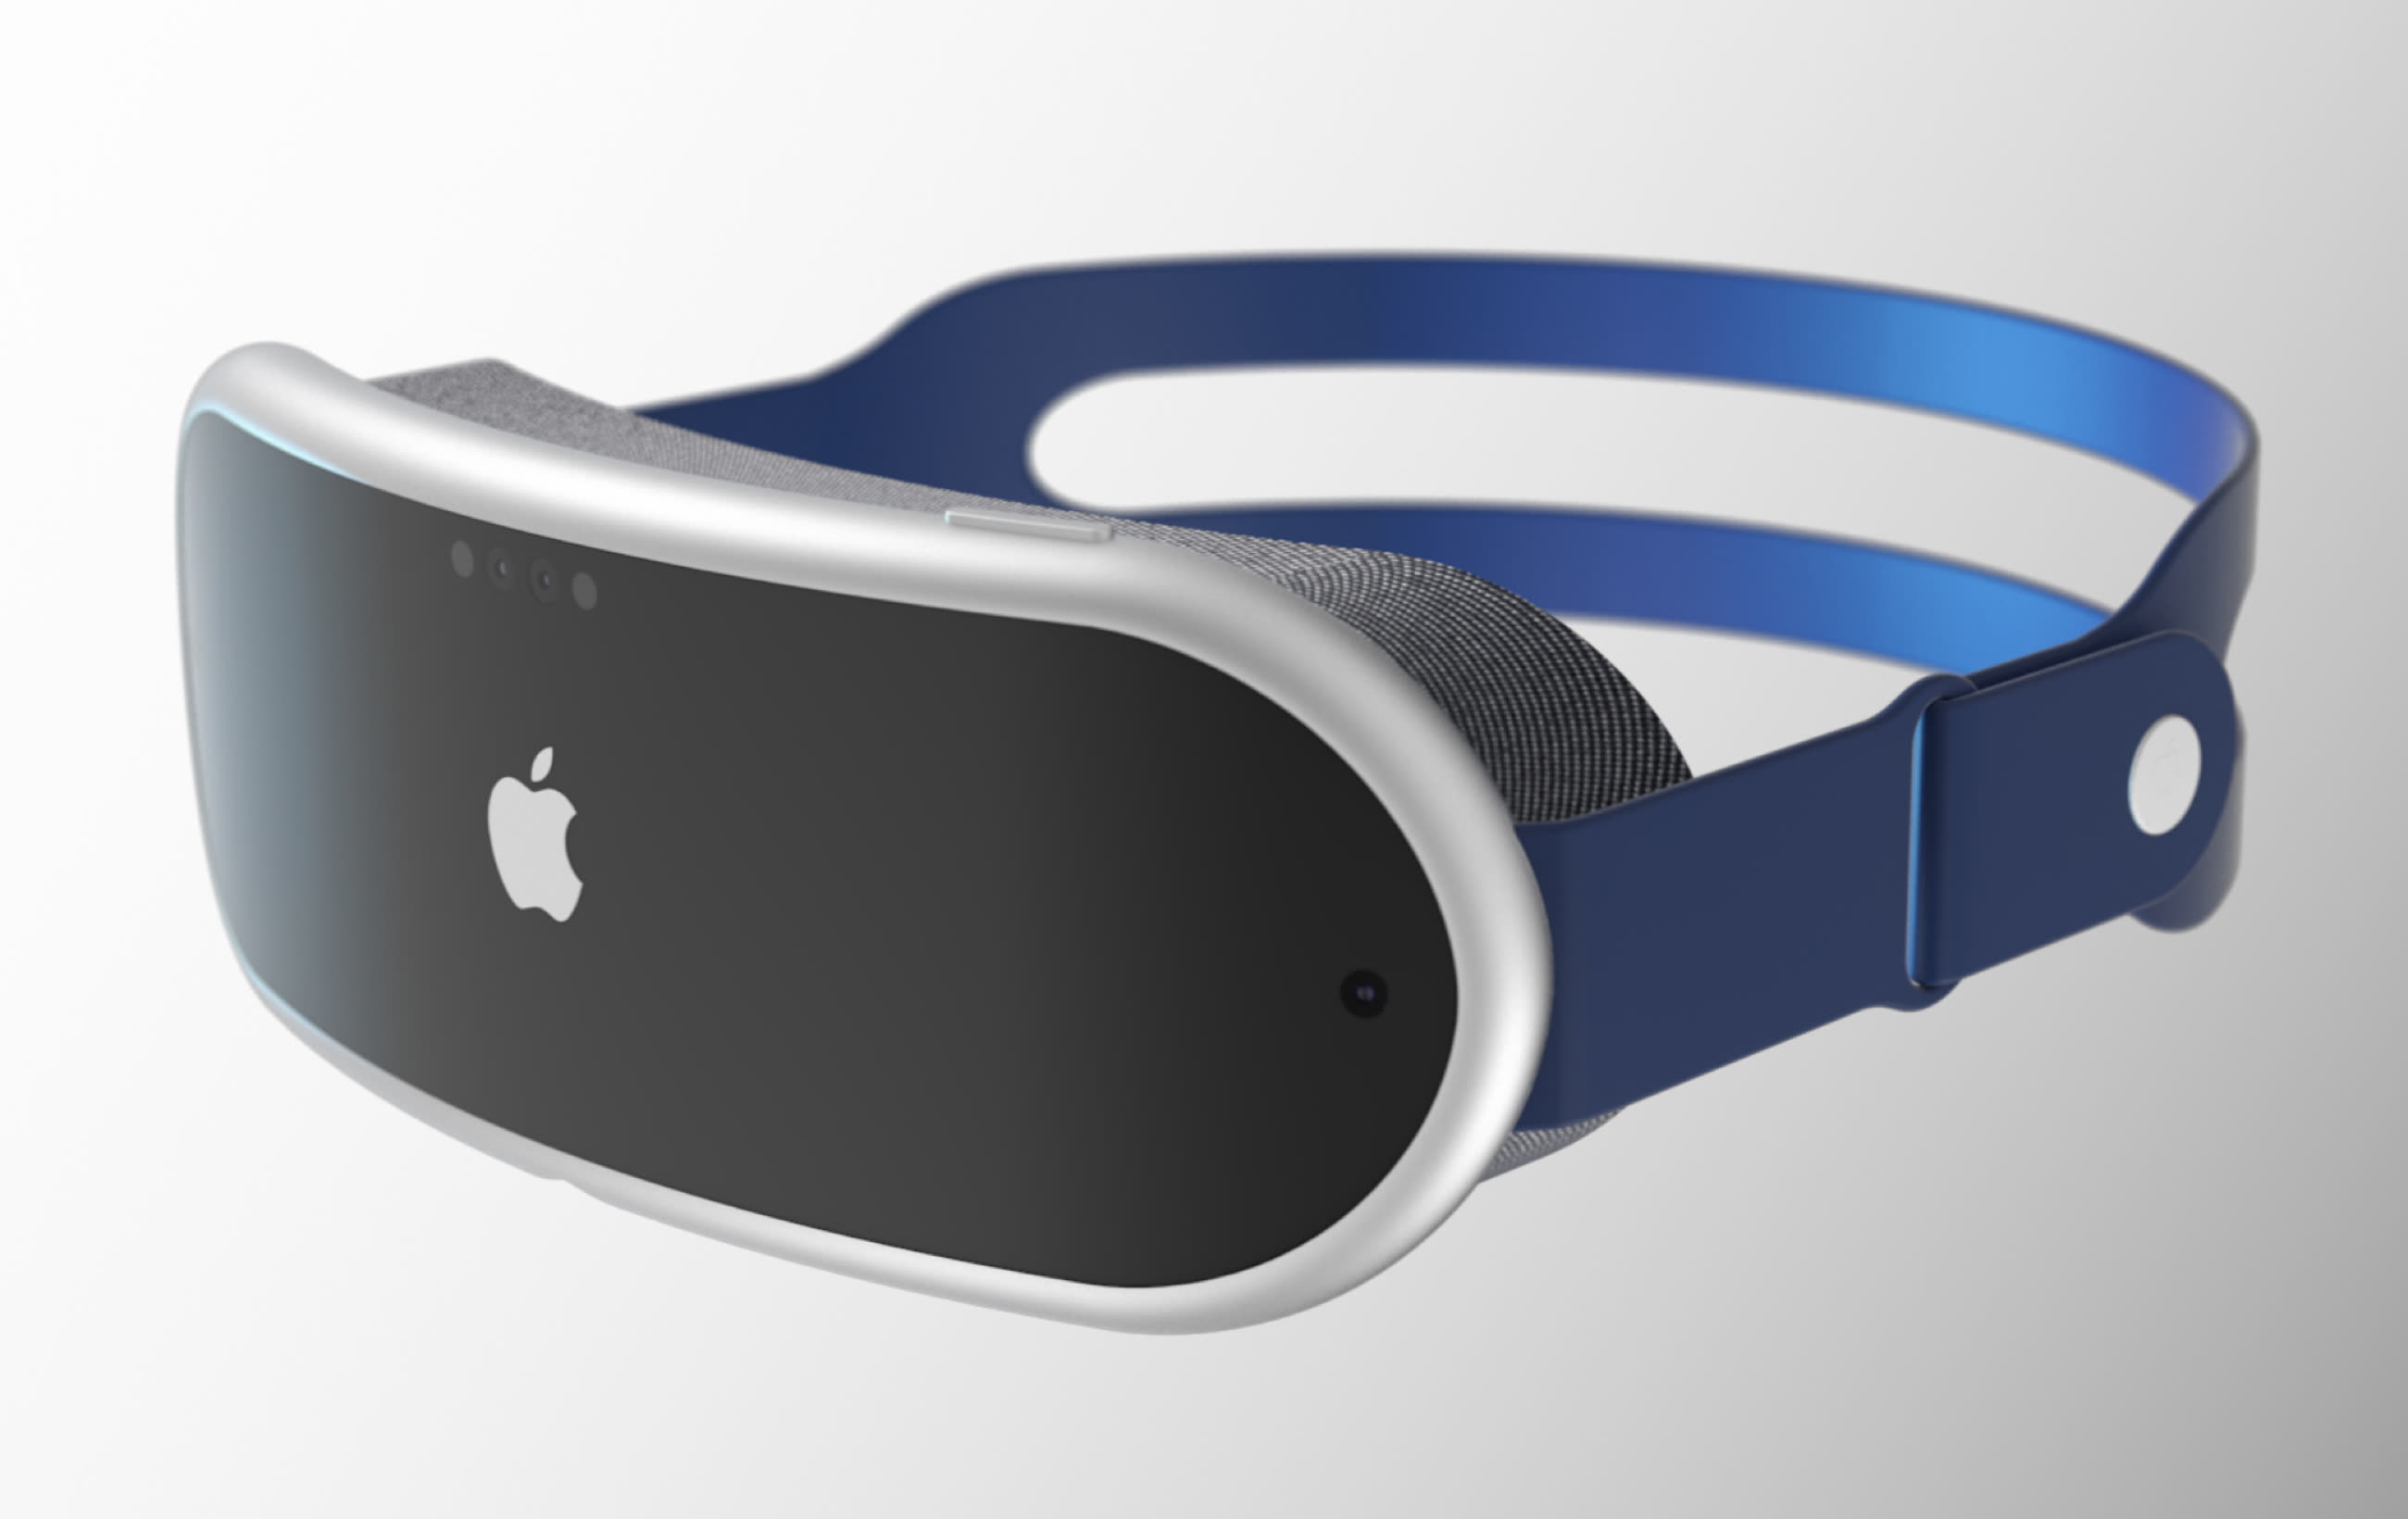 Les lunettes AR d'Apple pourraient être repoussées à 2025 ou 2026